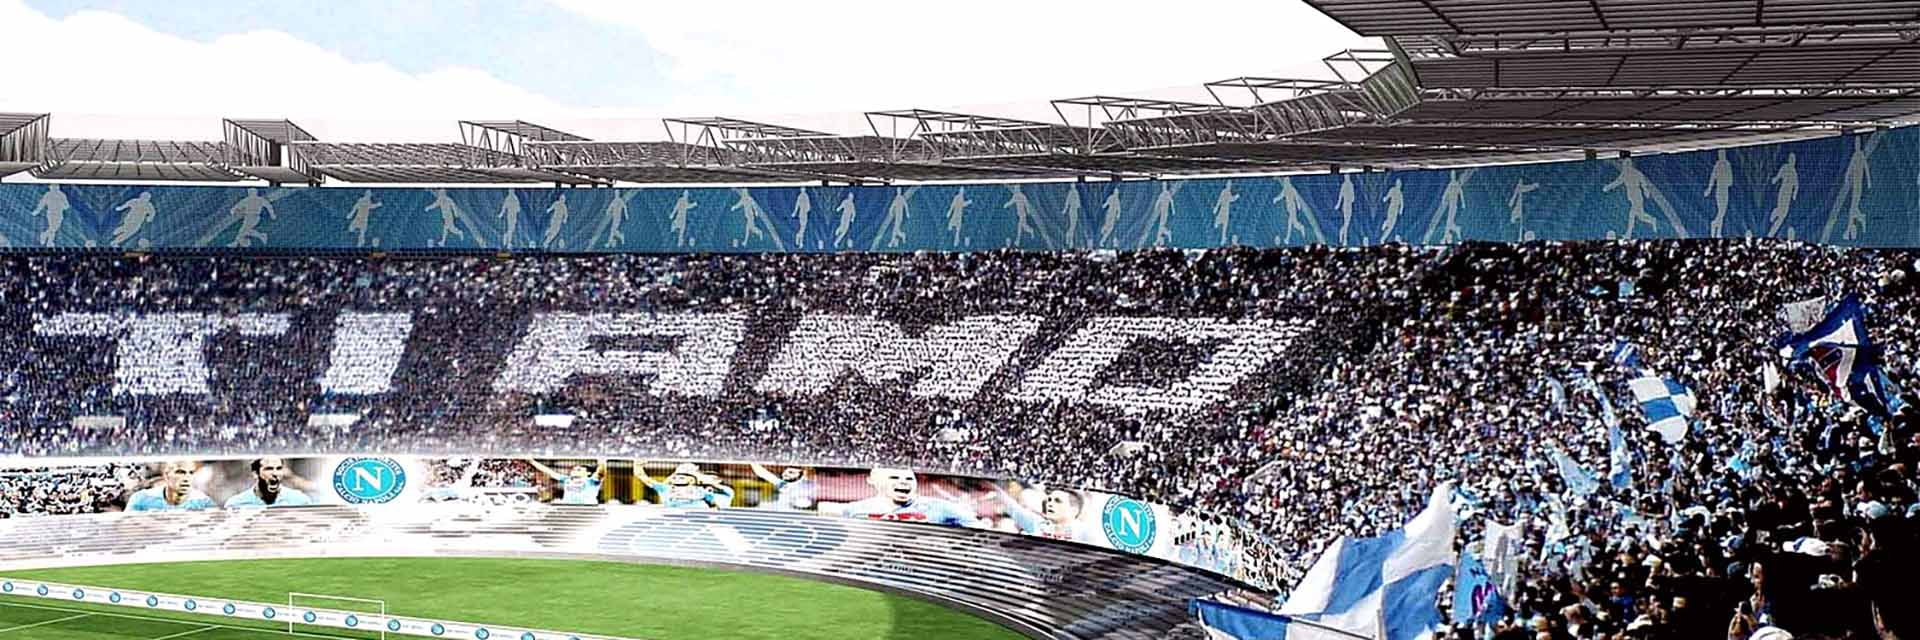 SSC Napoli - Bologna FC, 7 oktoberpå 18:00